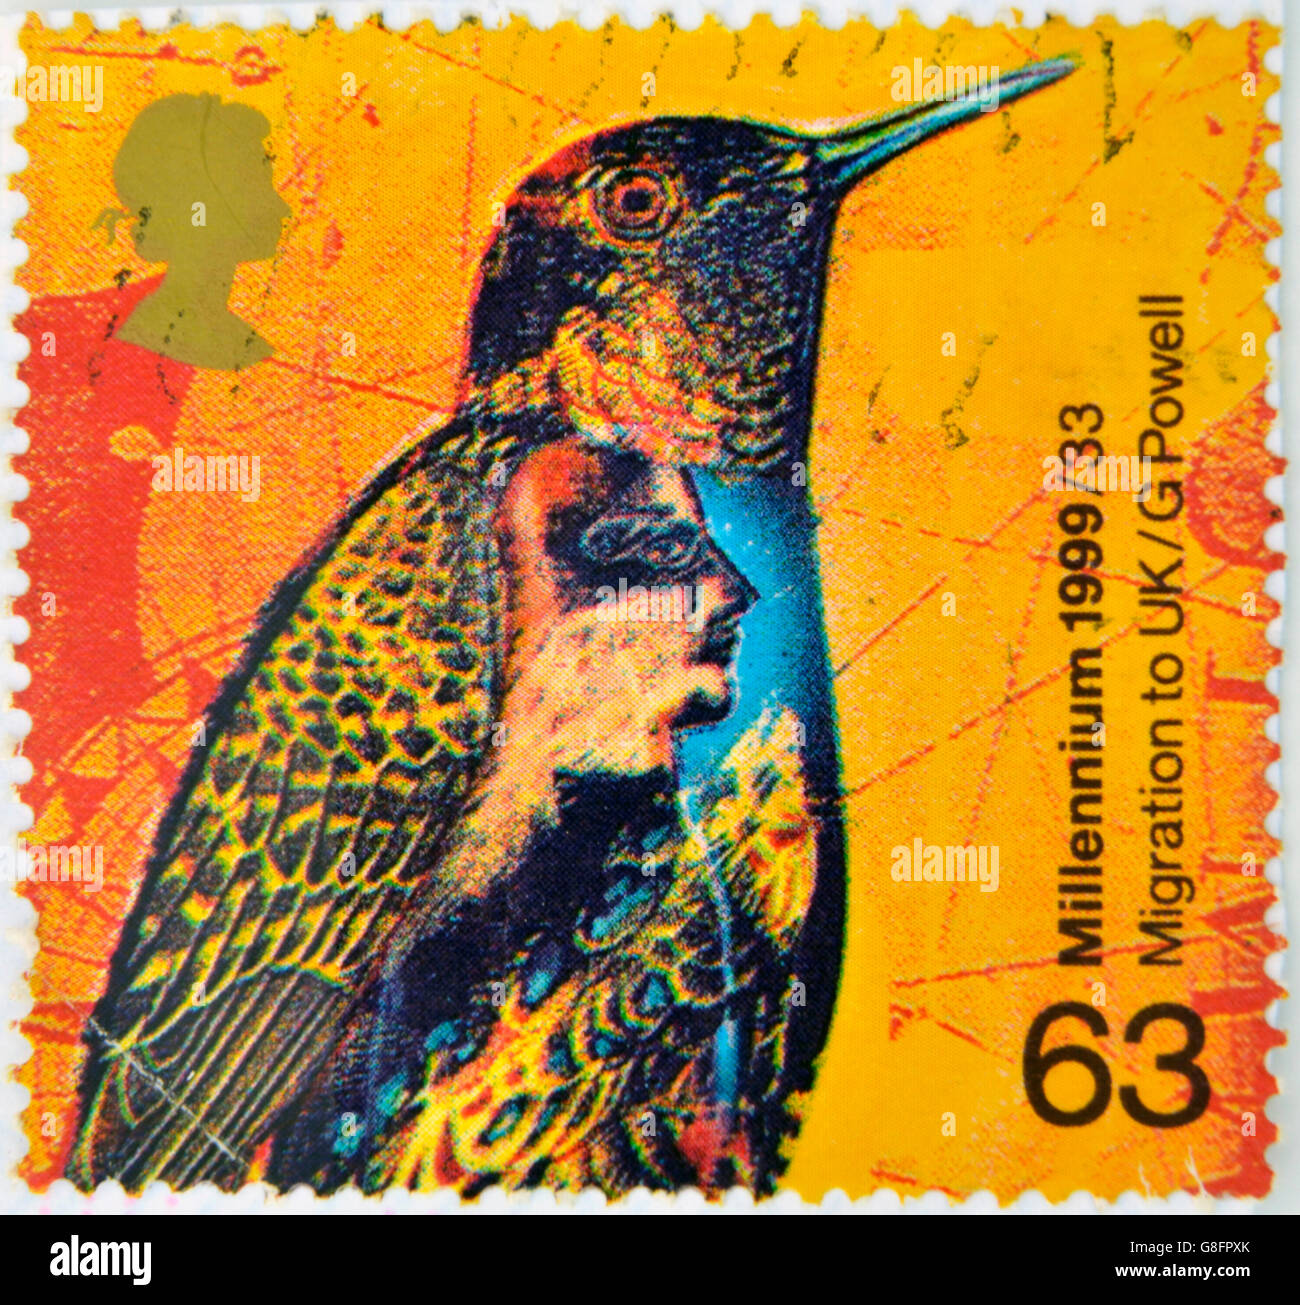 UNITED KINGDOM - CIRCA 1999: Eine Briefmarke gedruckt in Großbritannien zeigt eine künstlerische Darstellung eines Vogels und Migration nach Großbritannien, comm Stockfoto